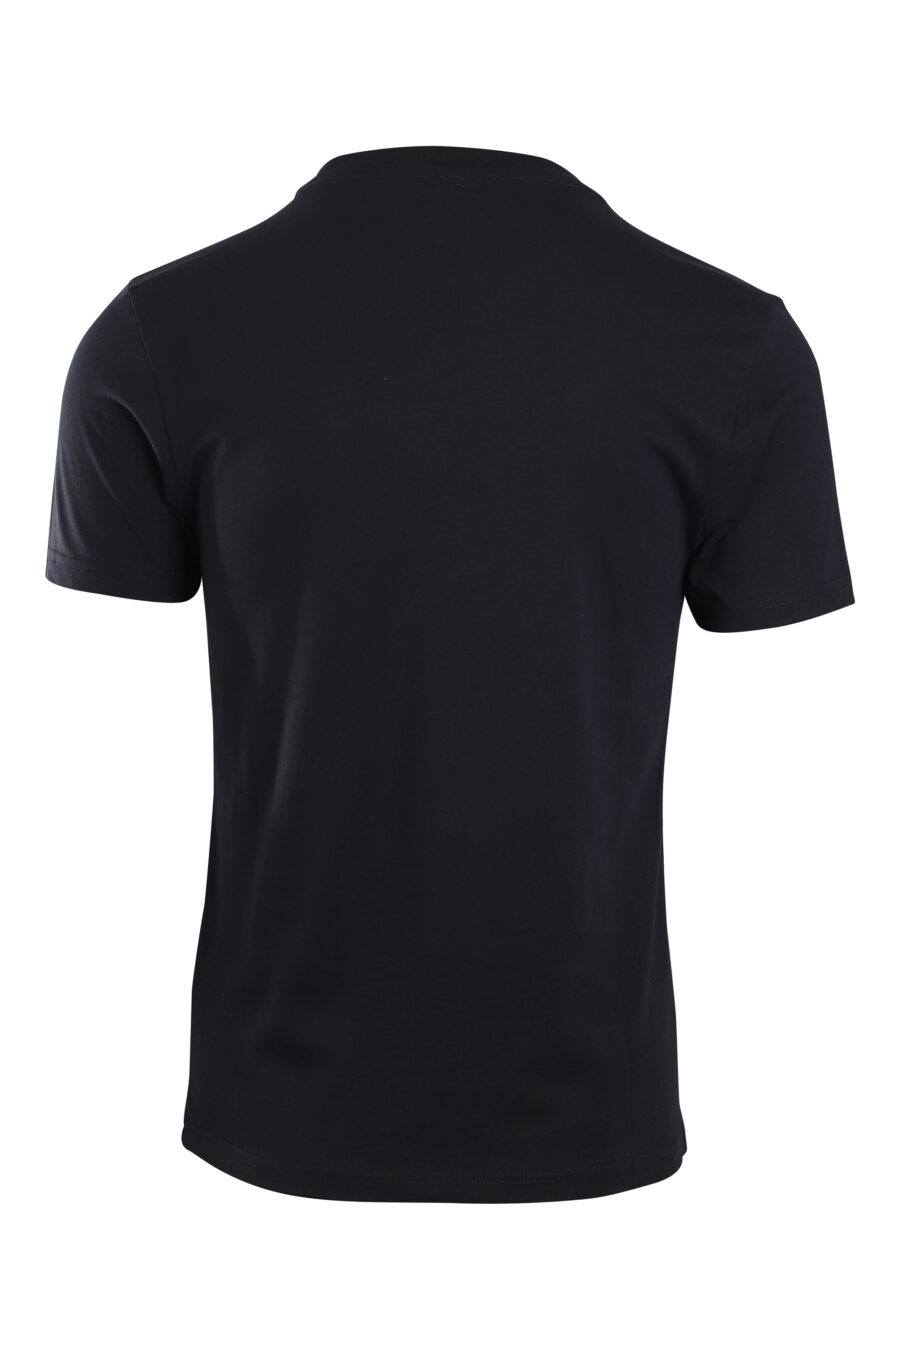 Camiseta negra con logo en banda en hombros - IMG 2161